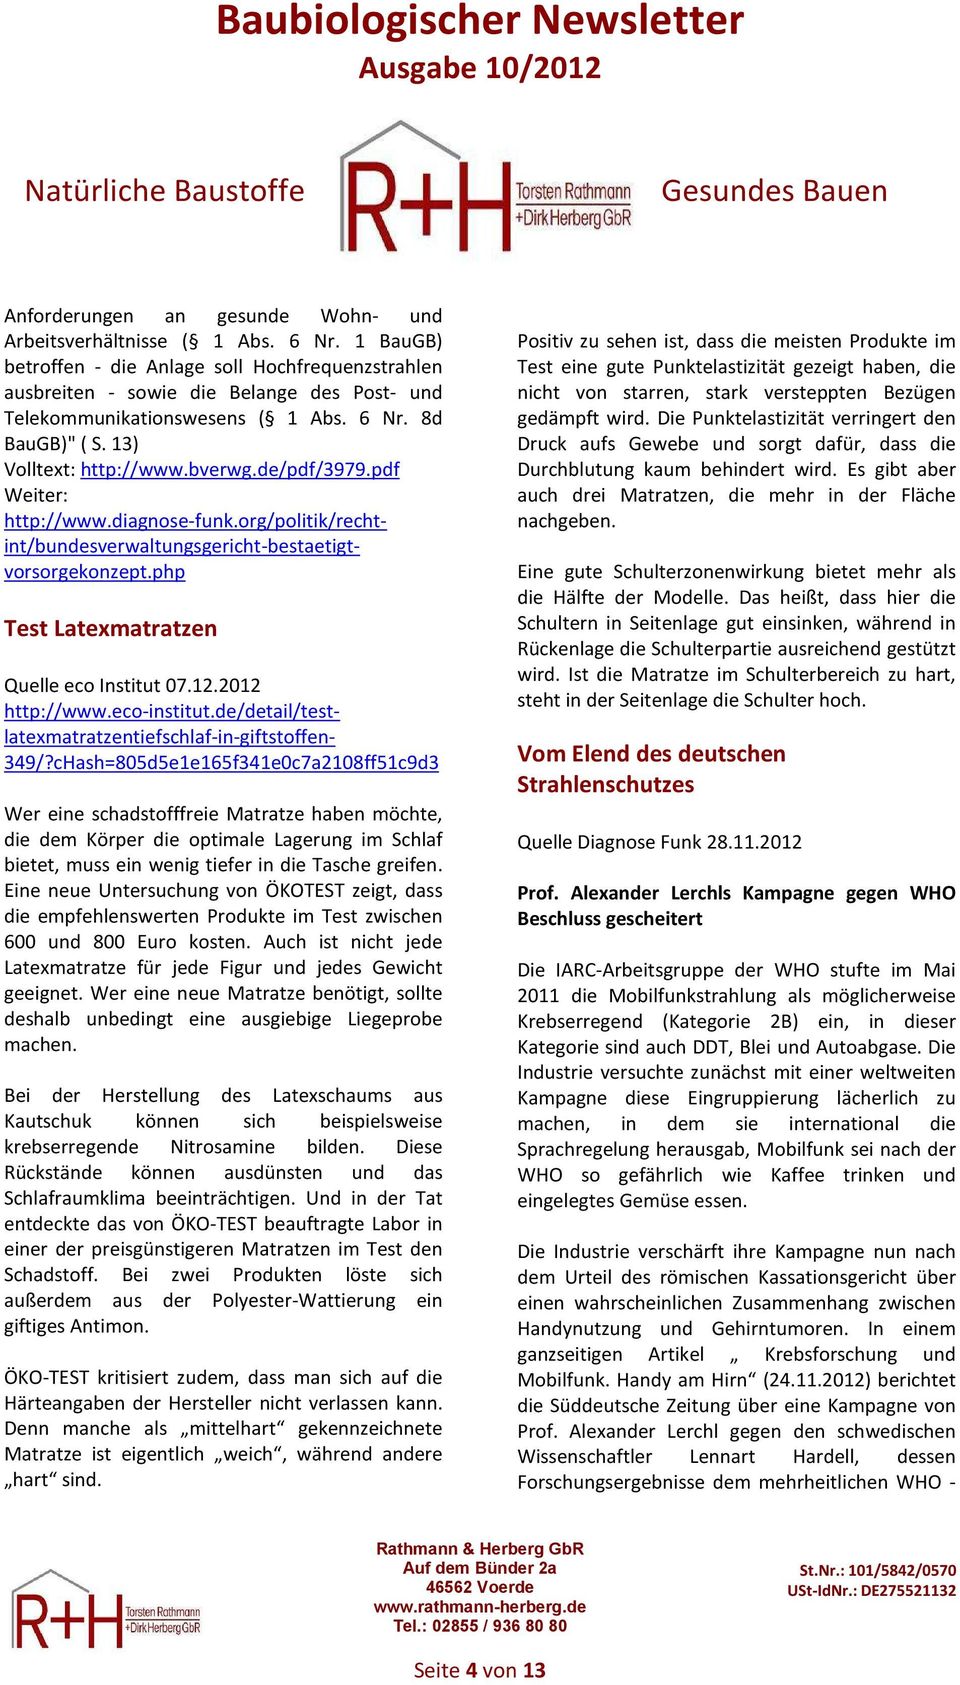 de/pdf/3979.pdf Weiter: http://www.diagnose-funk.org/politik/rechtint/bundesverwaltungsgericht-bestaetigtvorsorgekonzept.php Test Latexmatratzen Quelle eco Institut 07.12.2012 http://www.eco-institut.